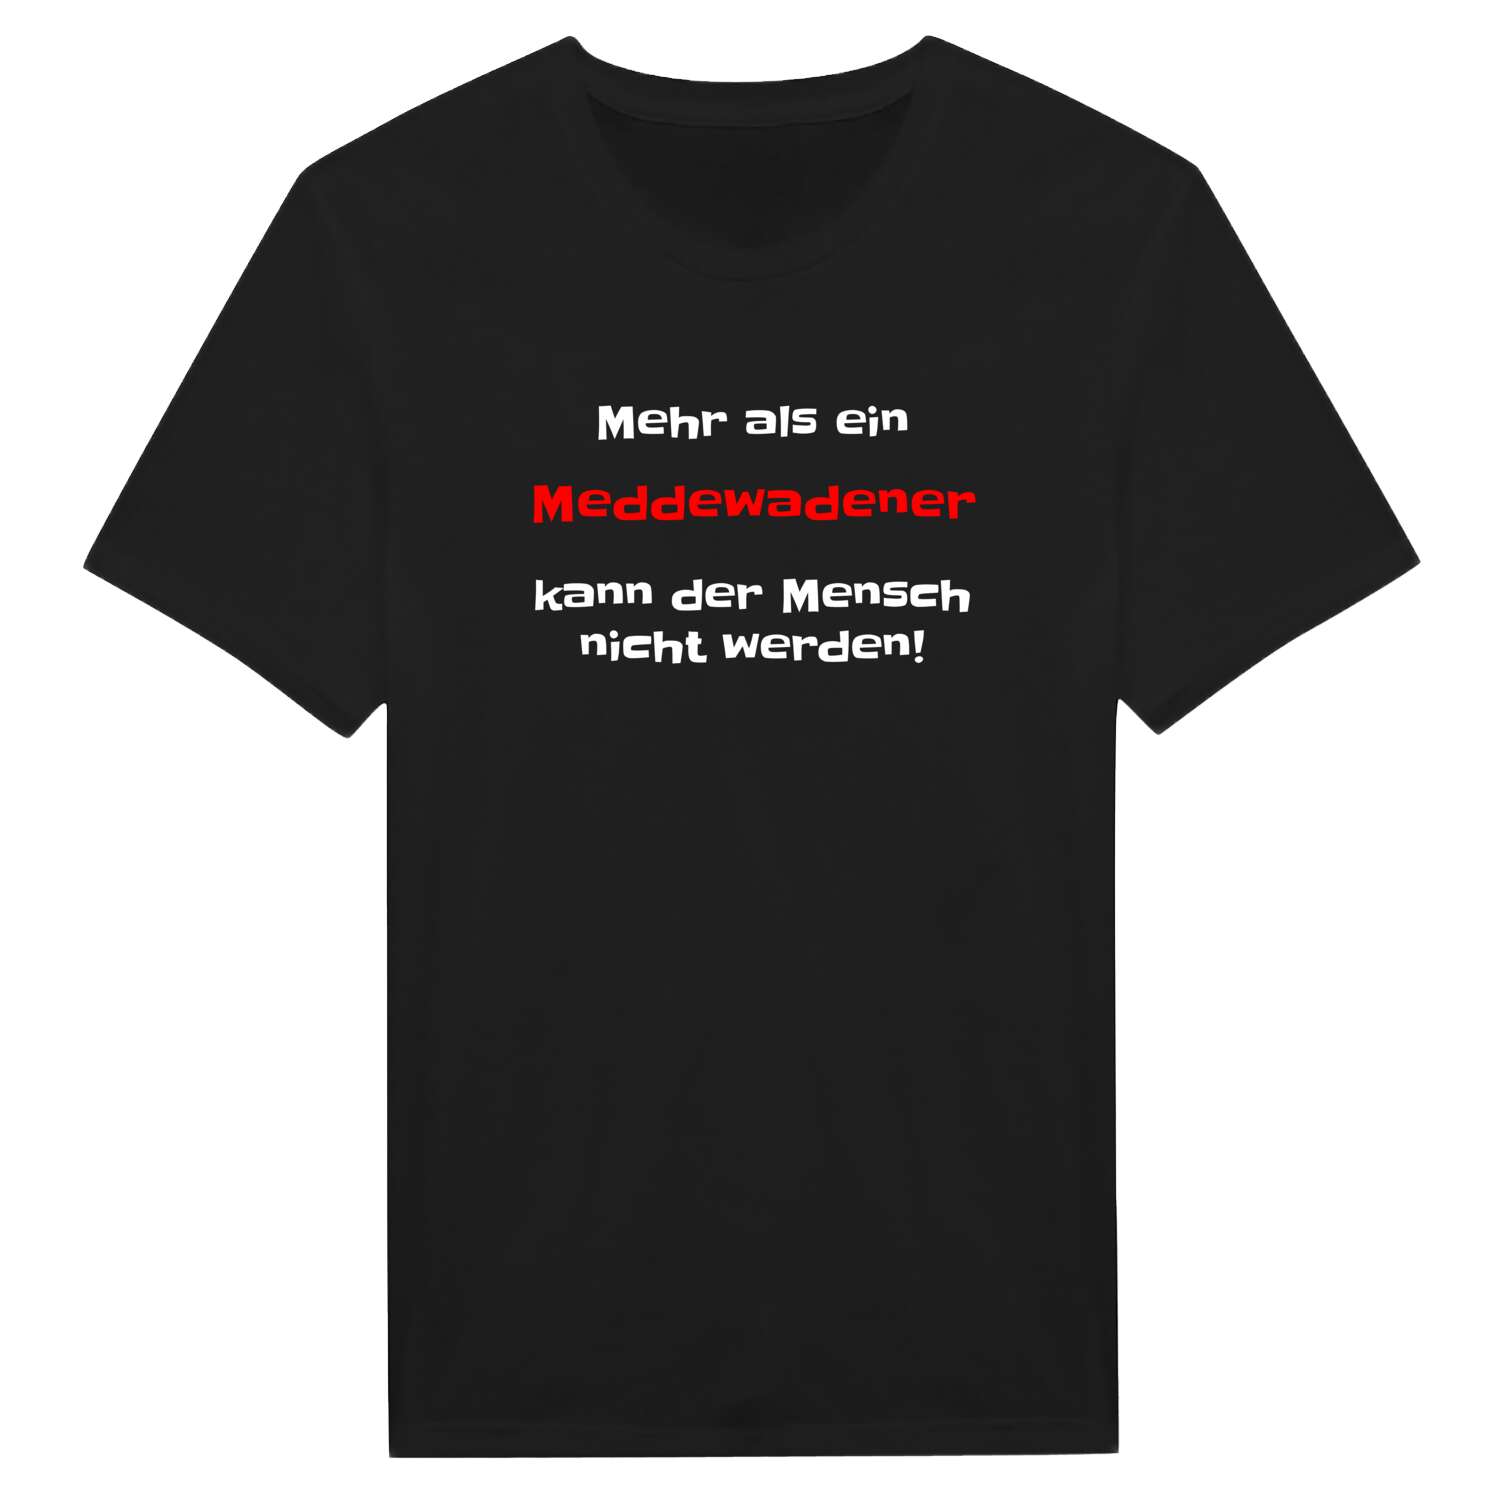 Meddewade T-Shirt »Mehr als ein«